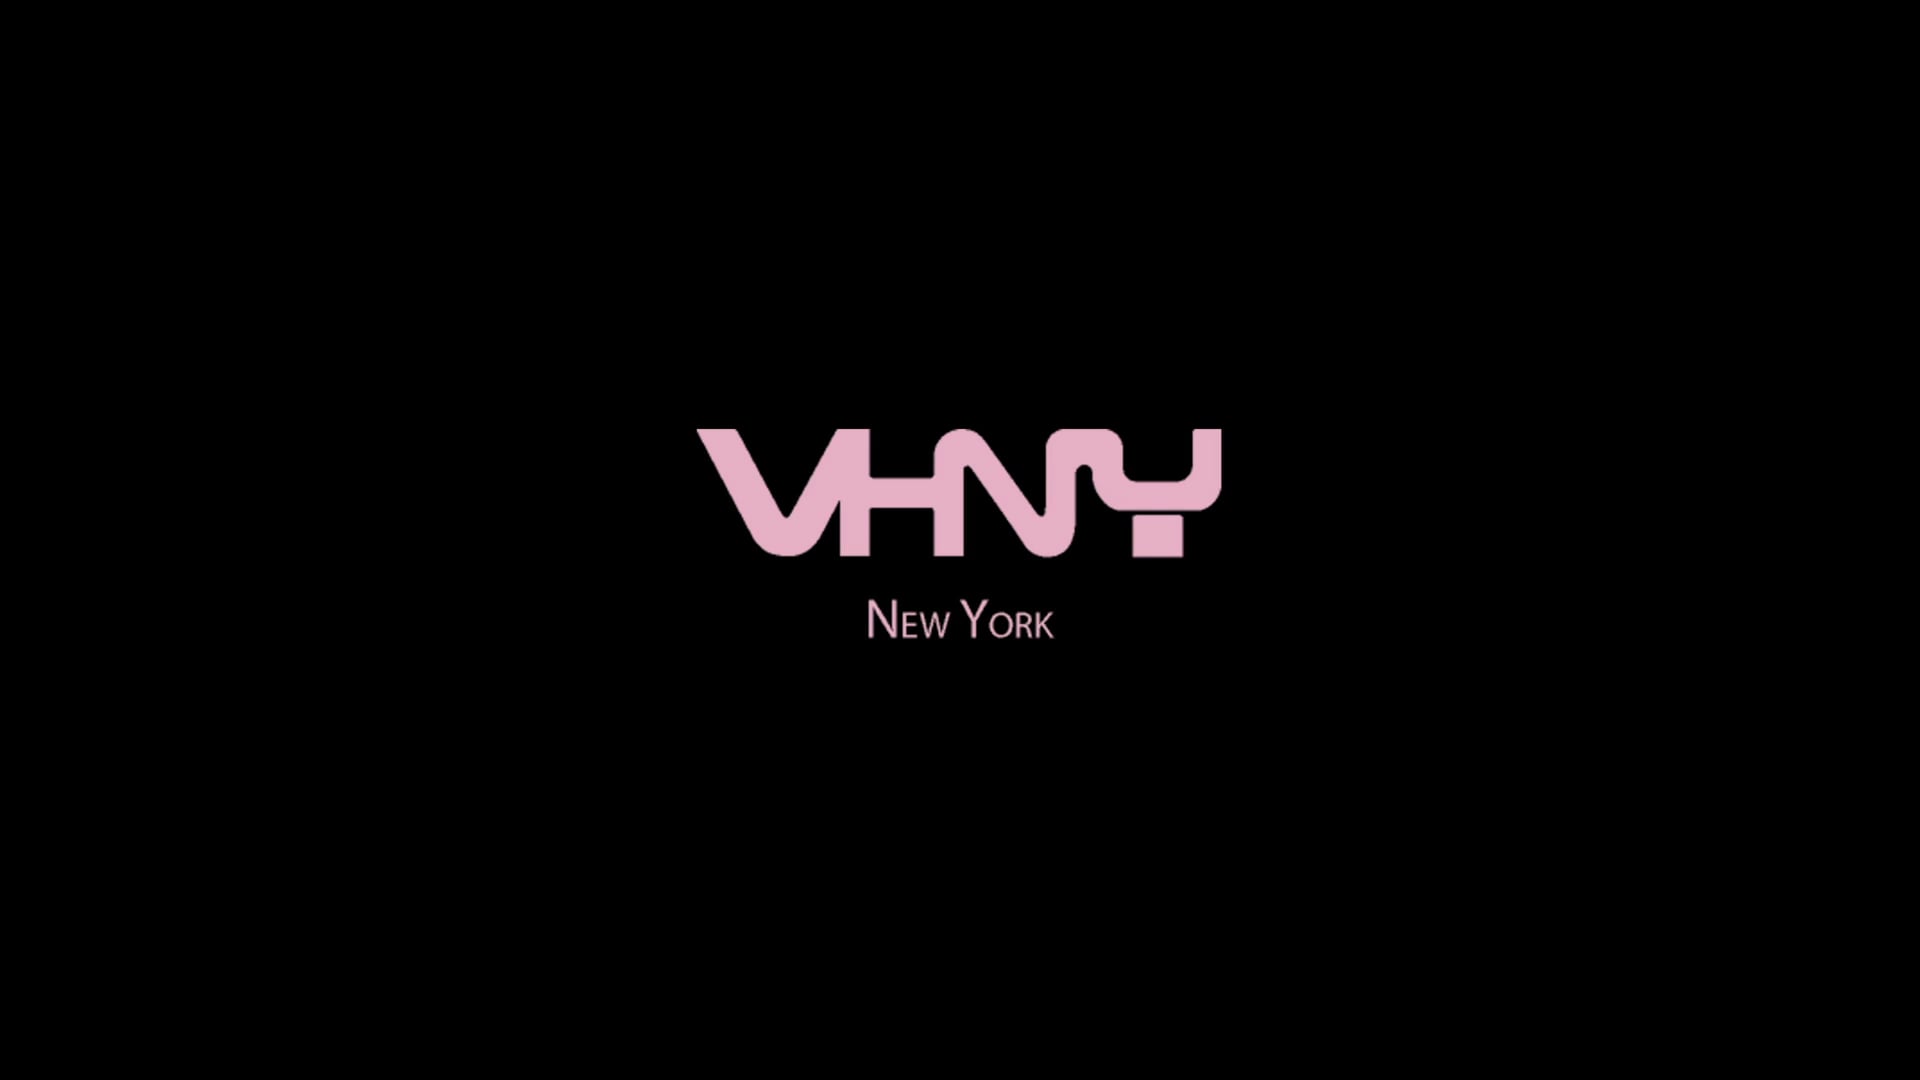 Promo video for VHNY